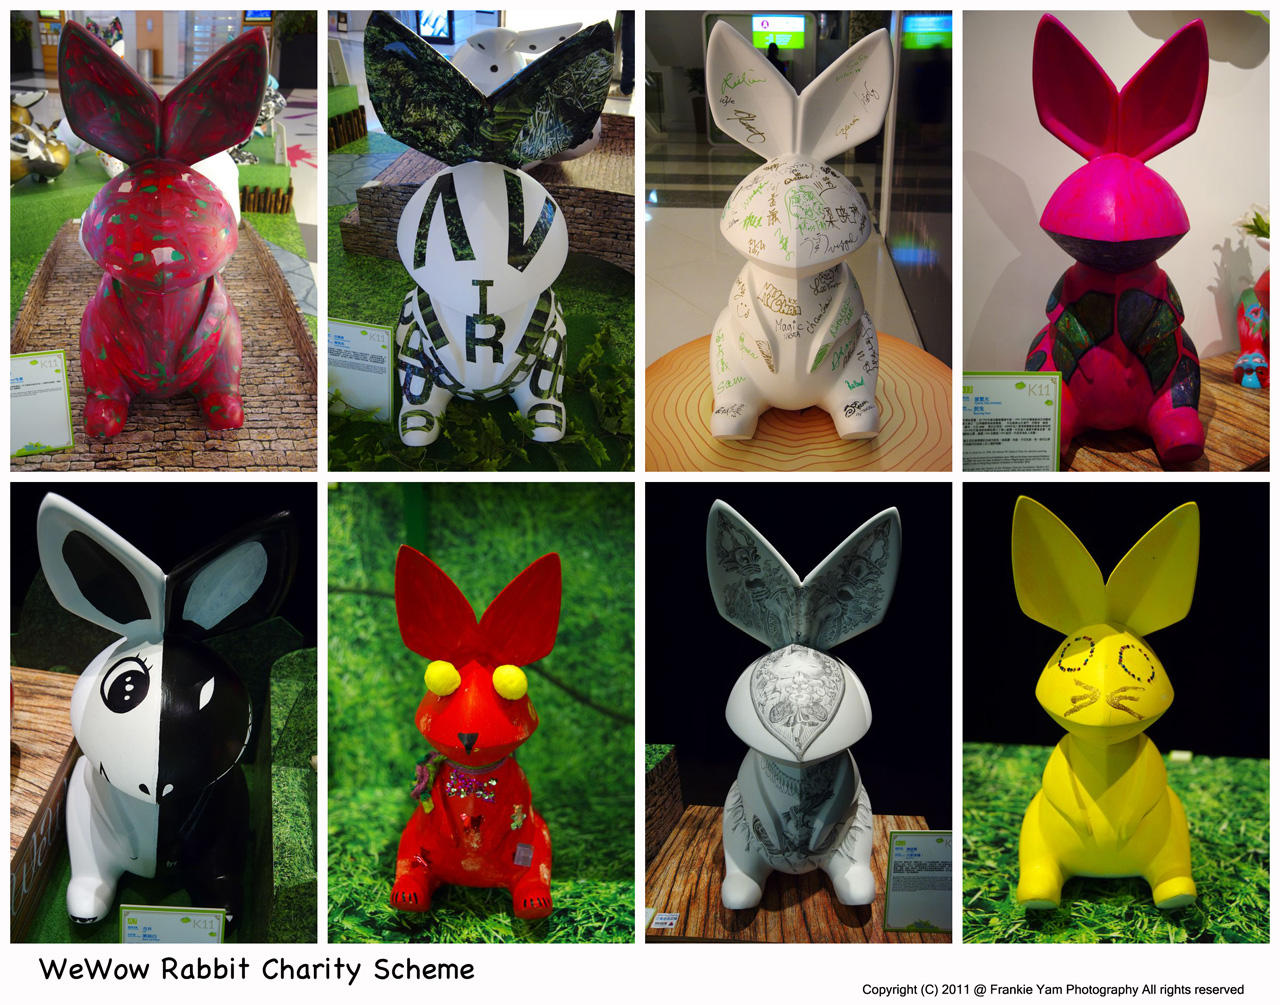 WeWow Rabbit Charity Scheme